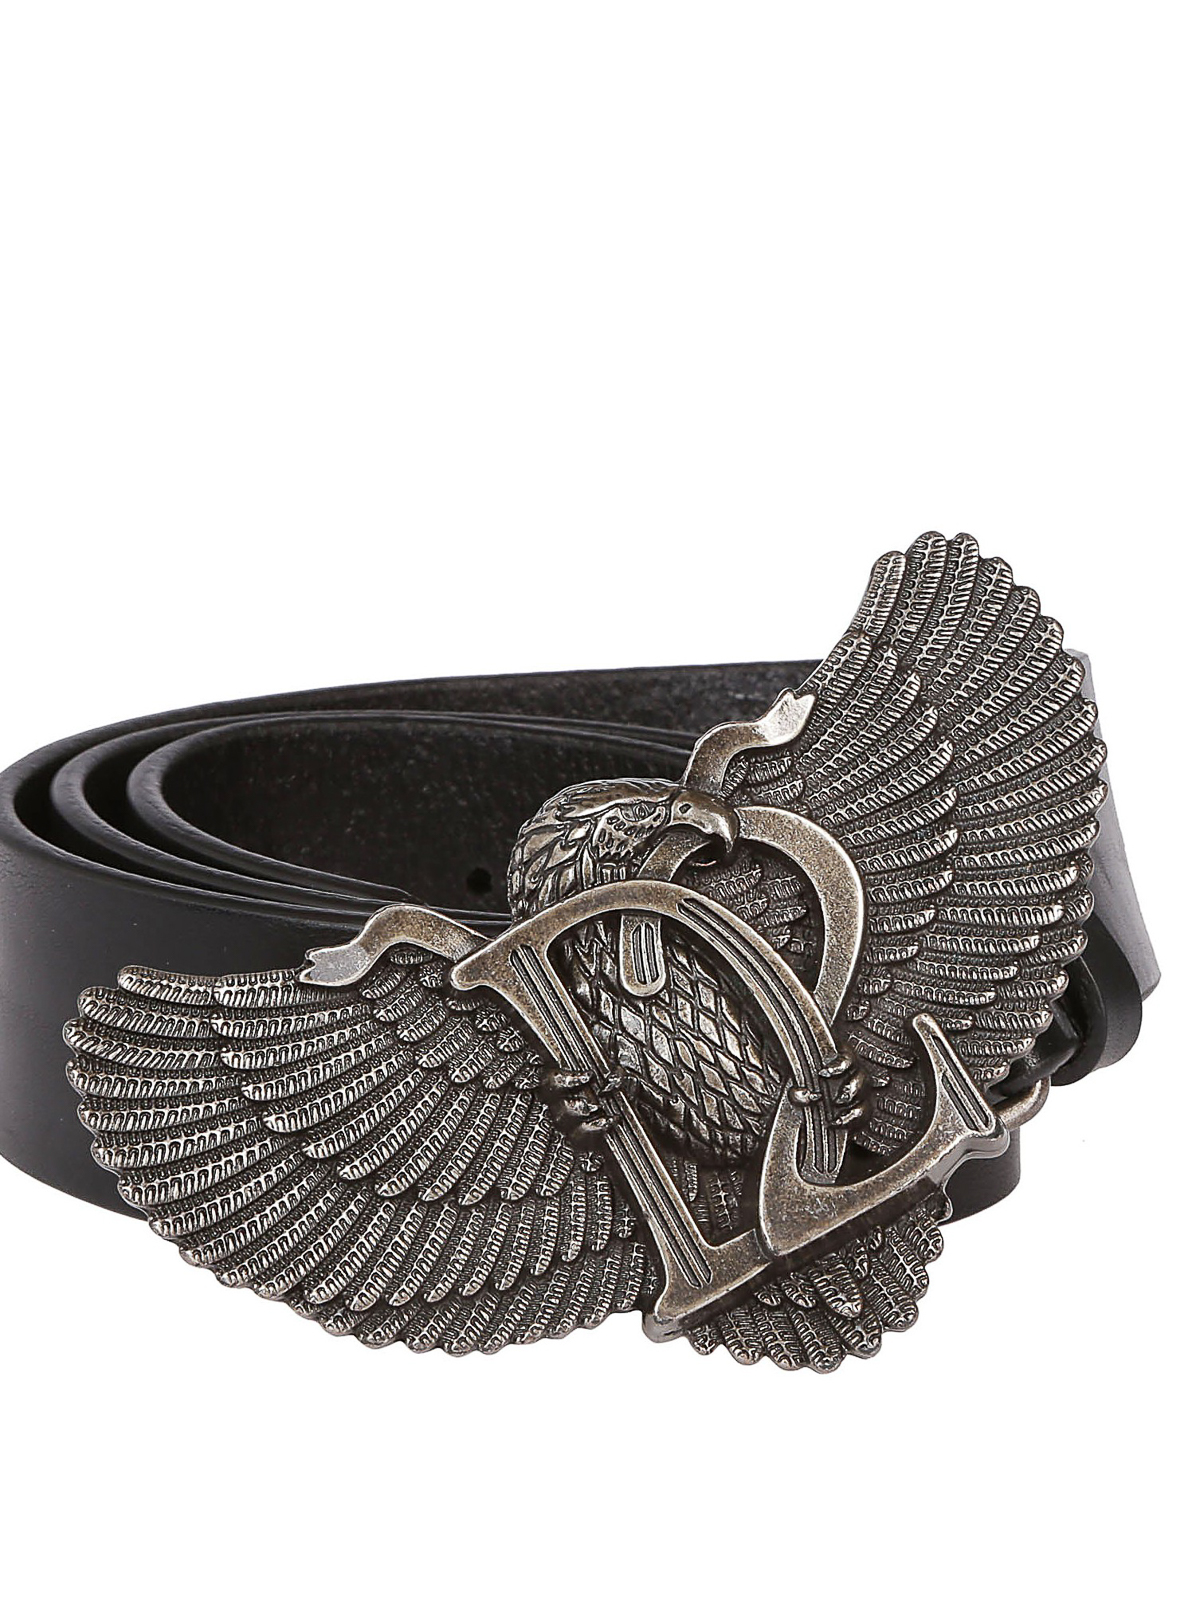 D2 Eagle buckled leather belt